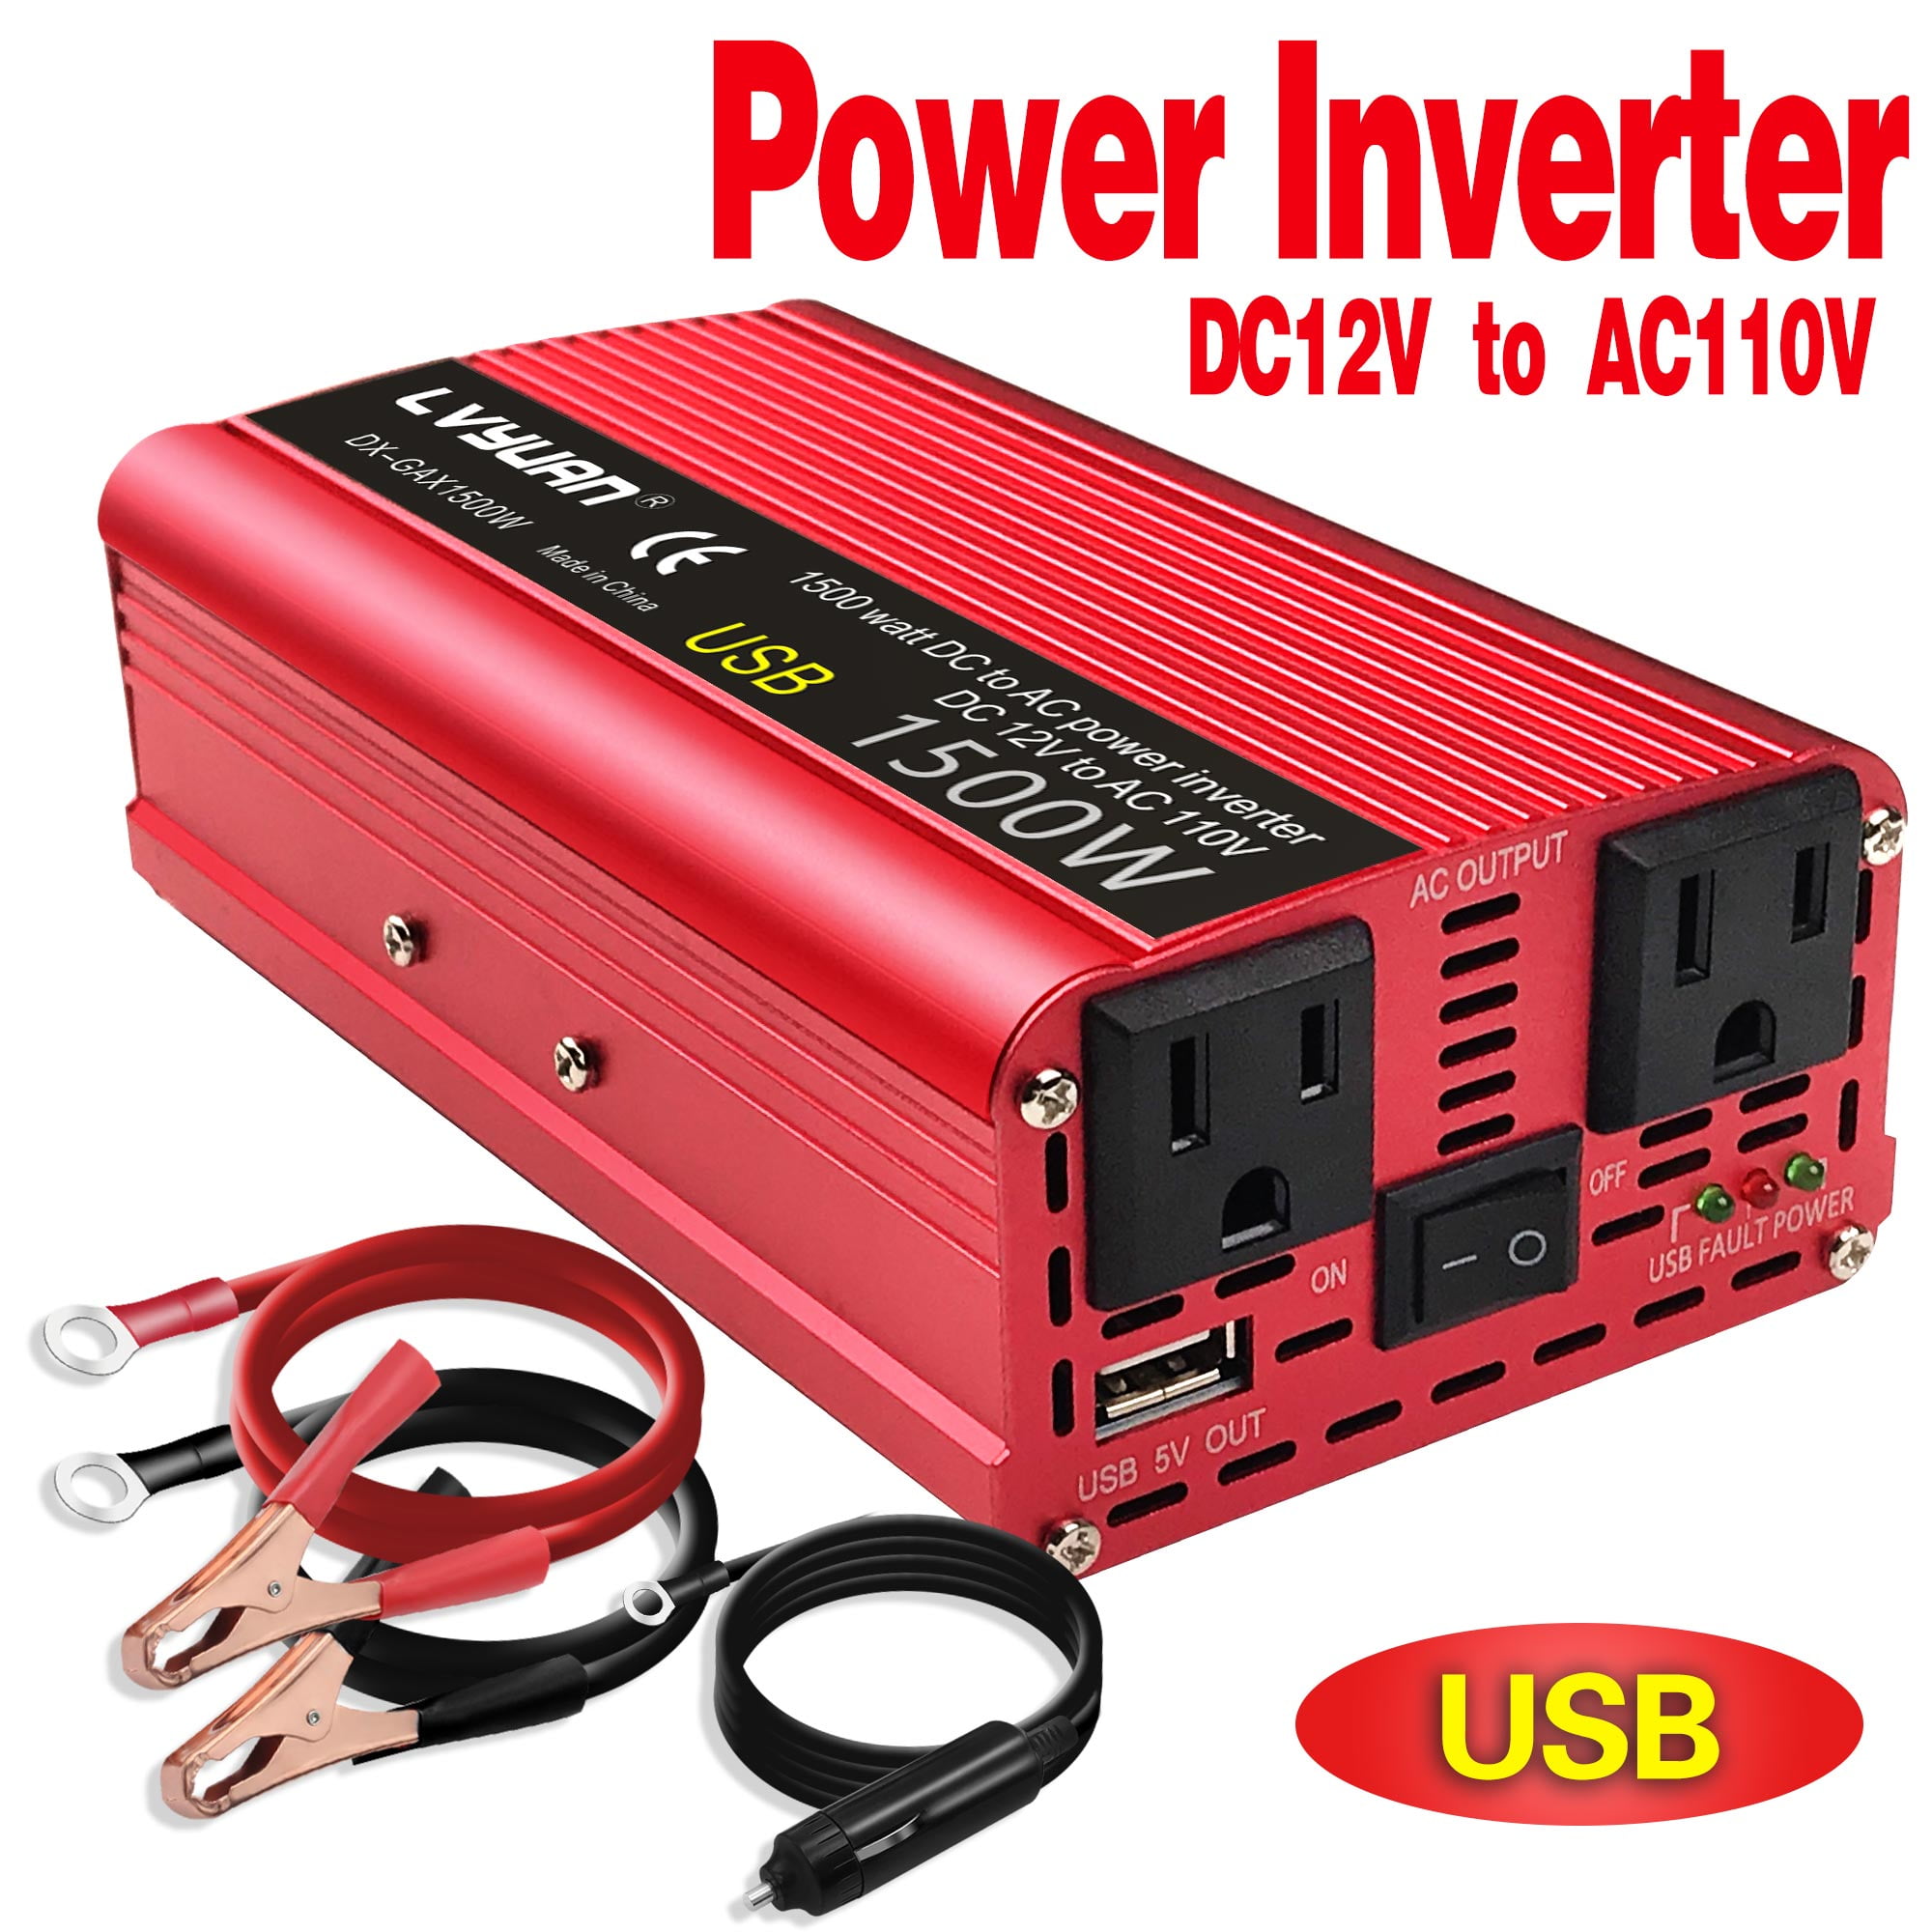 1500Watt Car Power Inverter DC12V to AC 110V Converter 4 USB Port for Electronic 